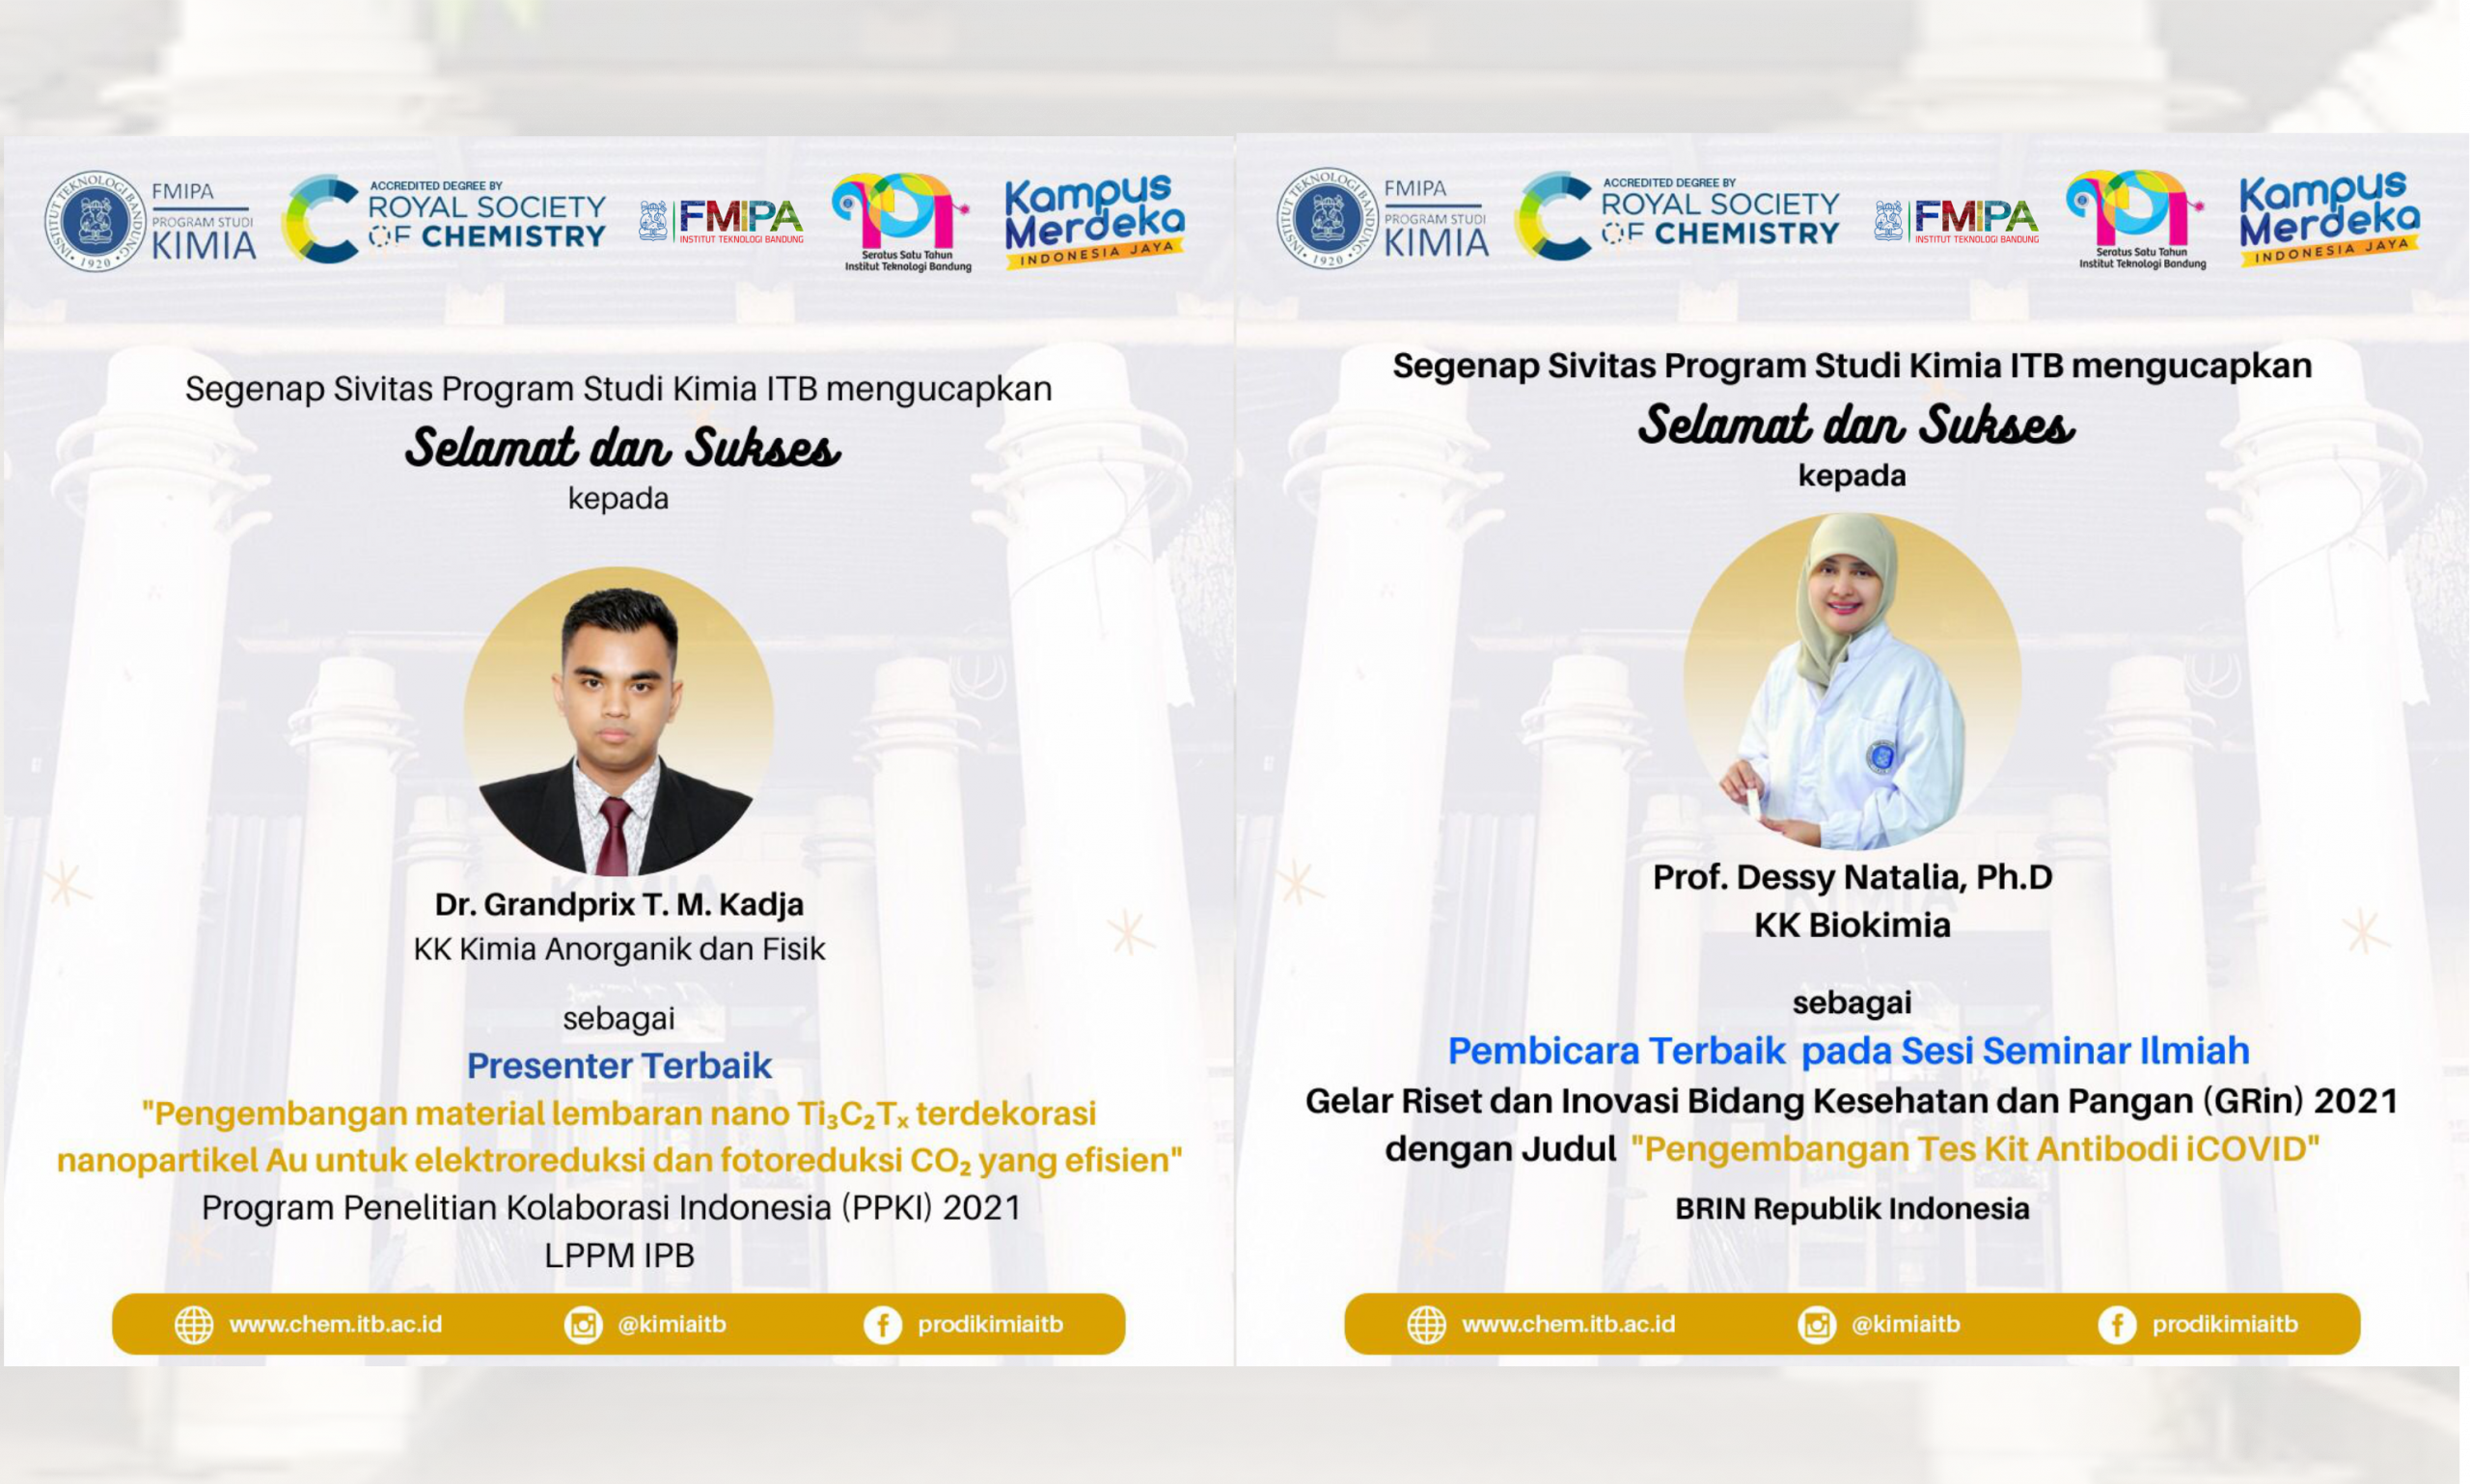 Prof. Dessy Natalia, Ph.D dan Dr. Grandprix T.M. Kadja Dosen Kimia FMIPA ITB, meraih penghargaan sebagai Pembicara dan Presenter Terbaik